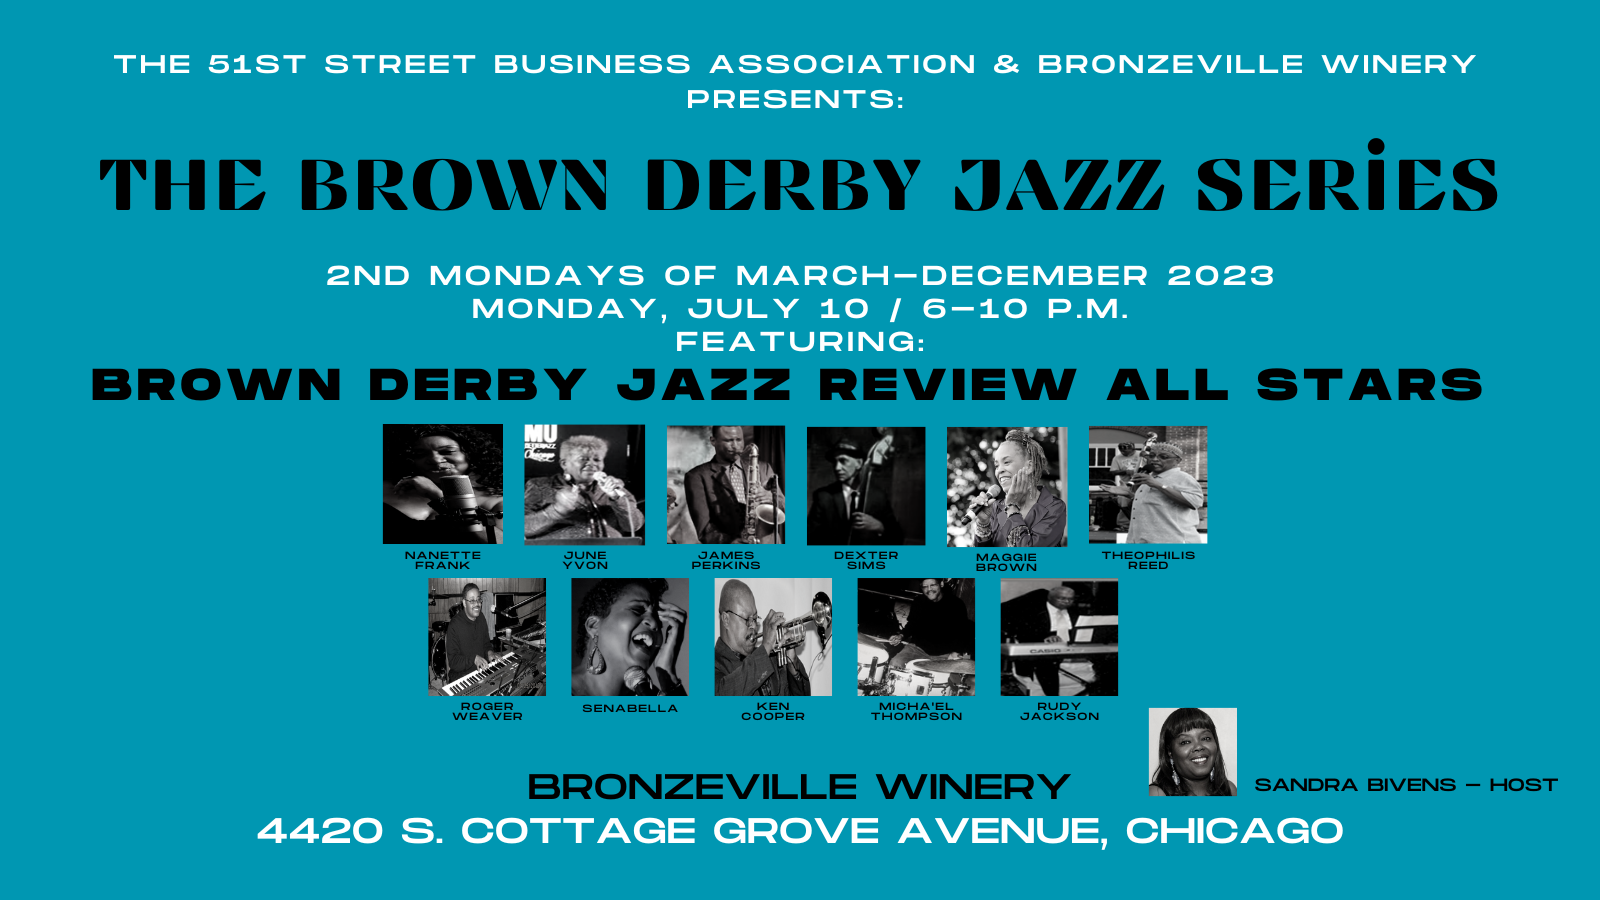 Brown Derby Jazz Series Twitter Post July